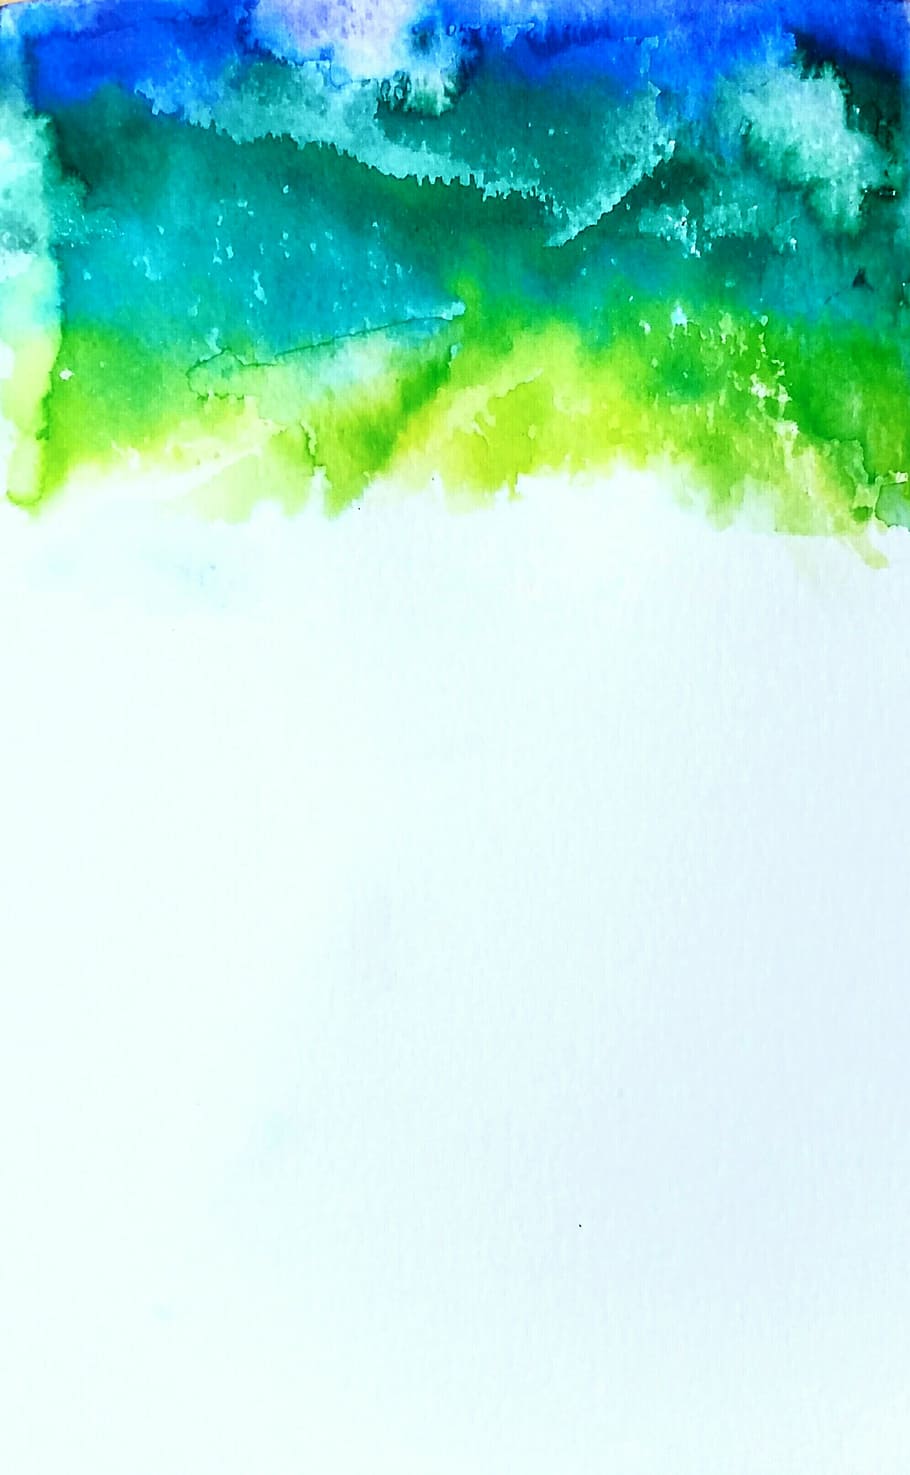 verde, azul, cerceta, resumo, pintura, aquarela, índigo, gotejamento, ondular, textura